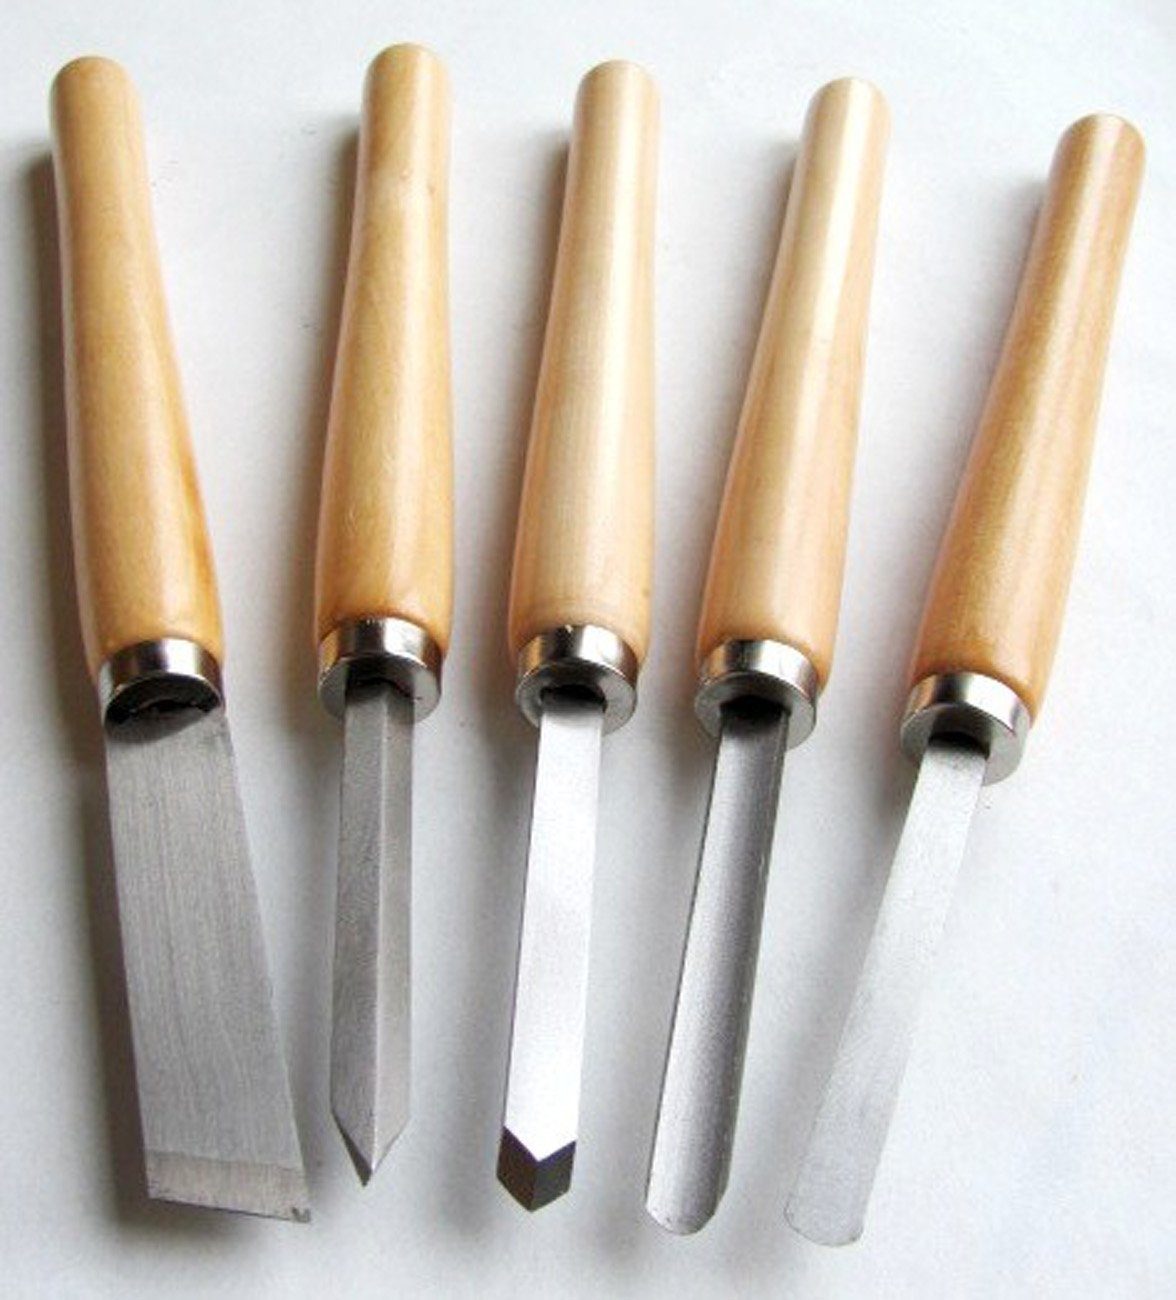 myMAW Universalmesser 5 Drechseleisen Messer Drechselbeitel drechseln drechsel … Beitel